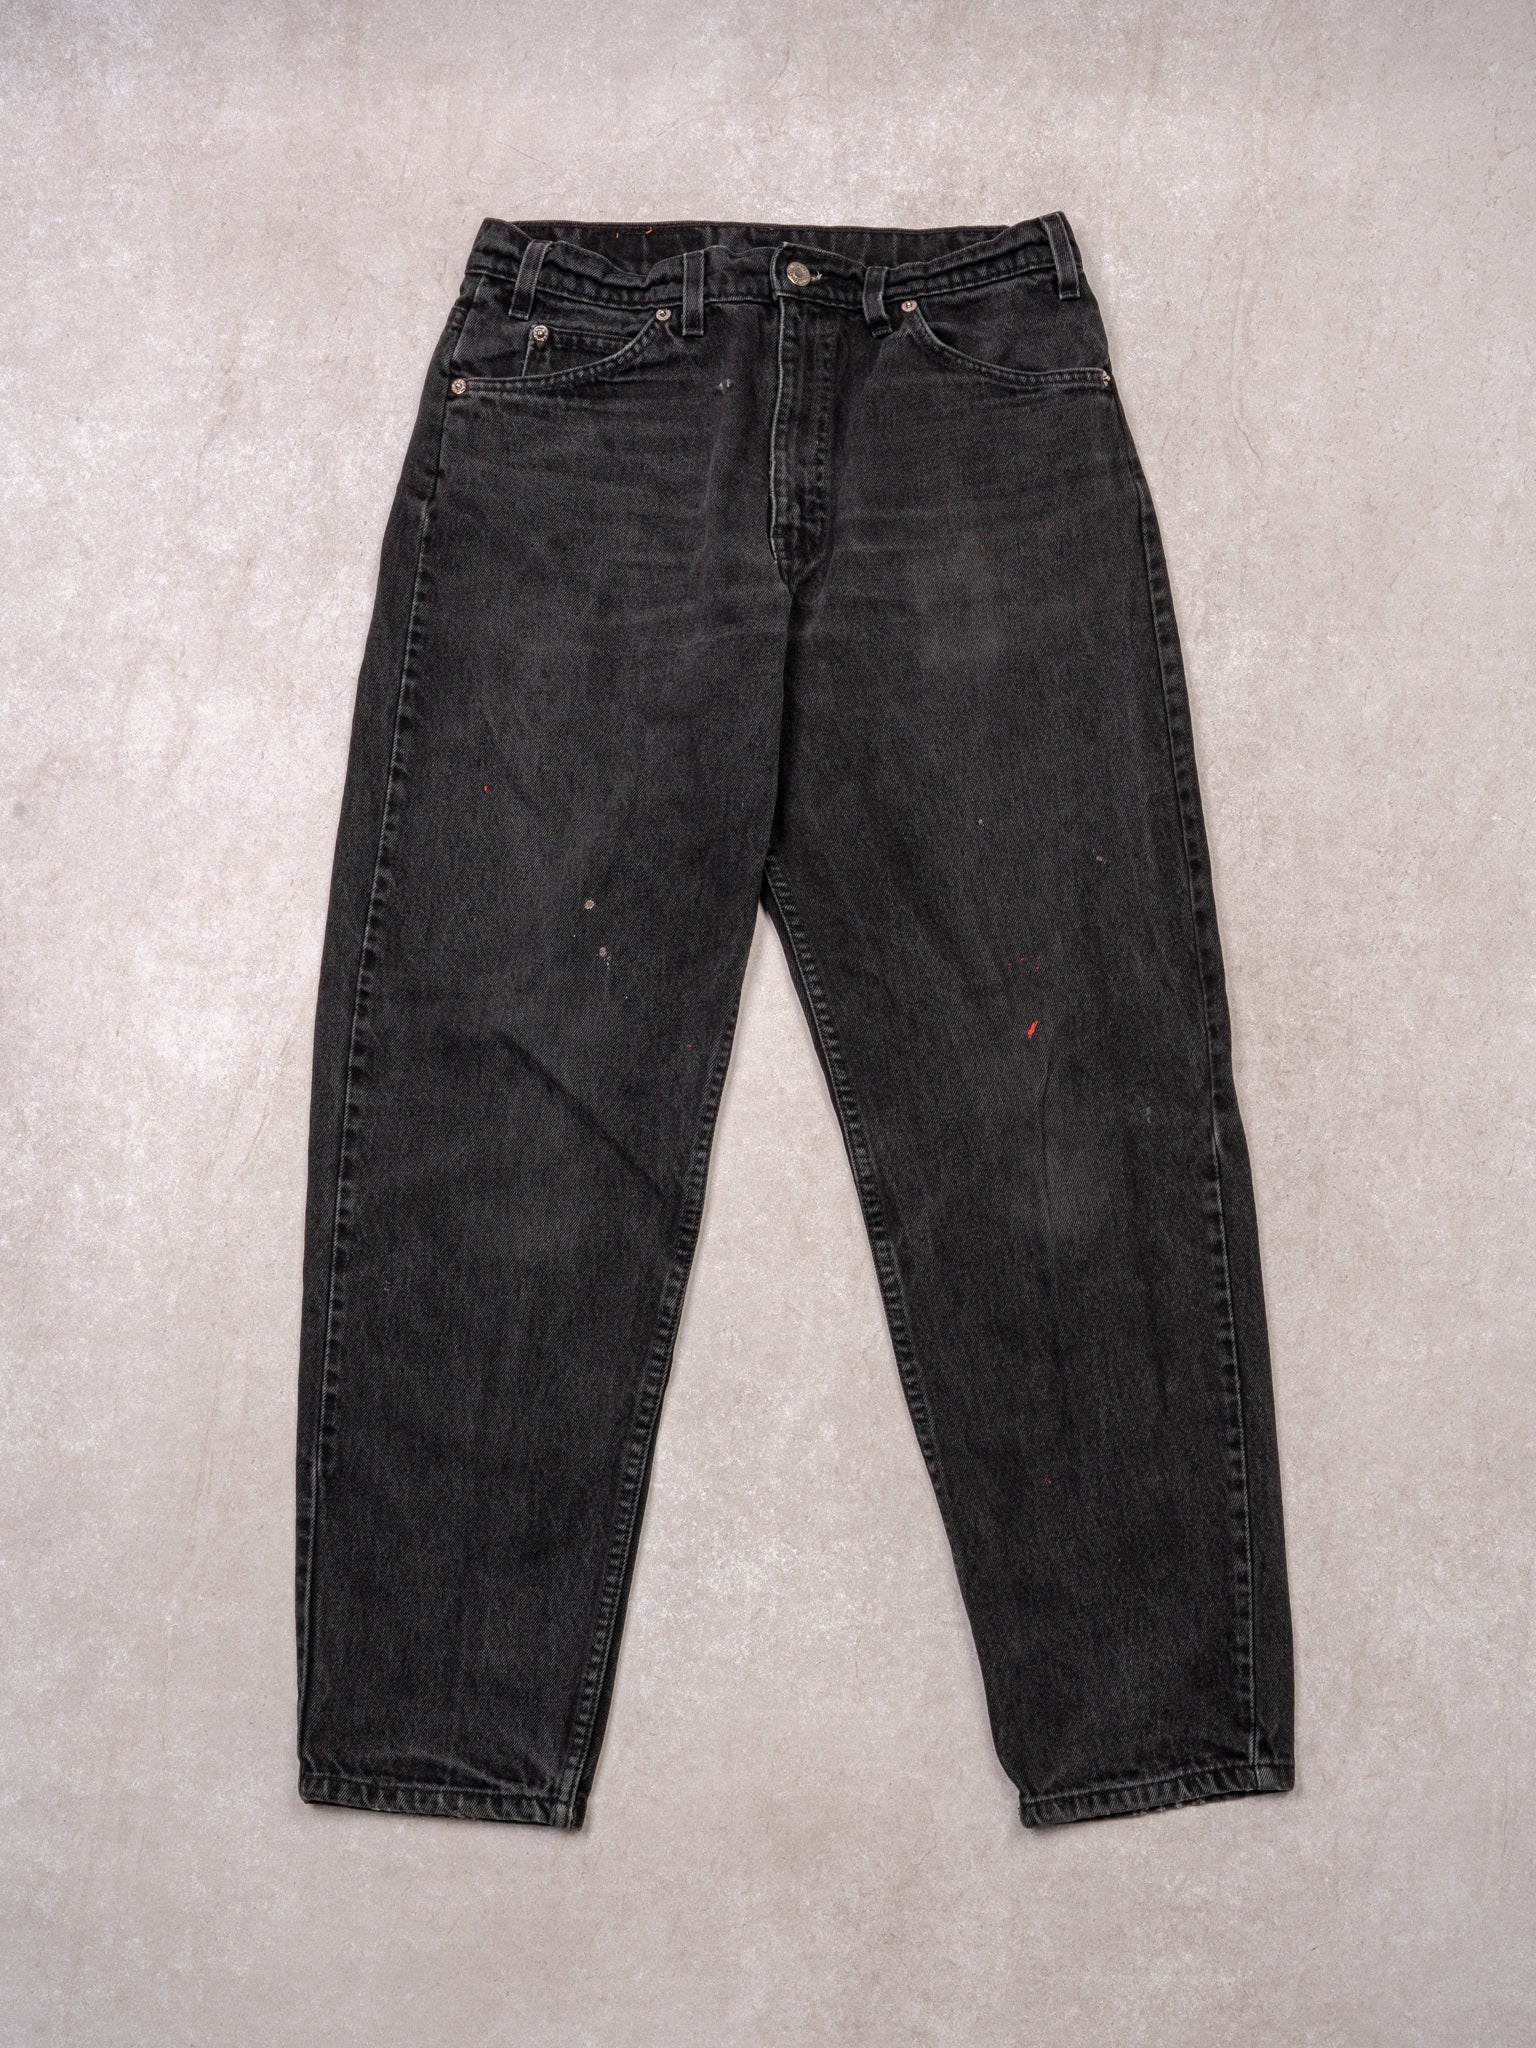 Vintage 1970s Black Levi 550 Orange Tab Jeans (31 x 30)